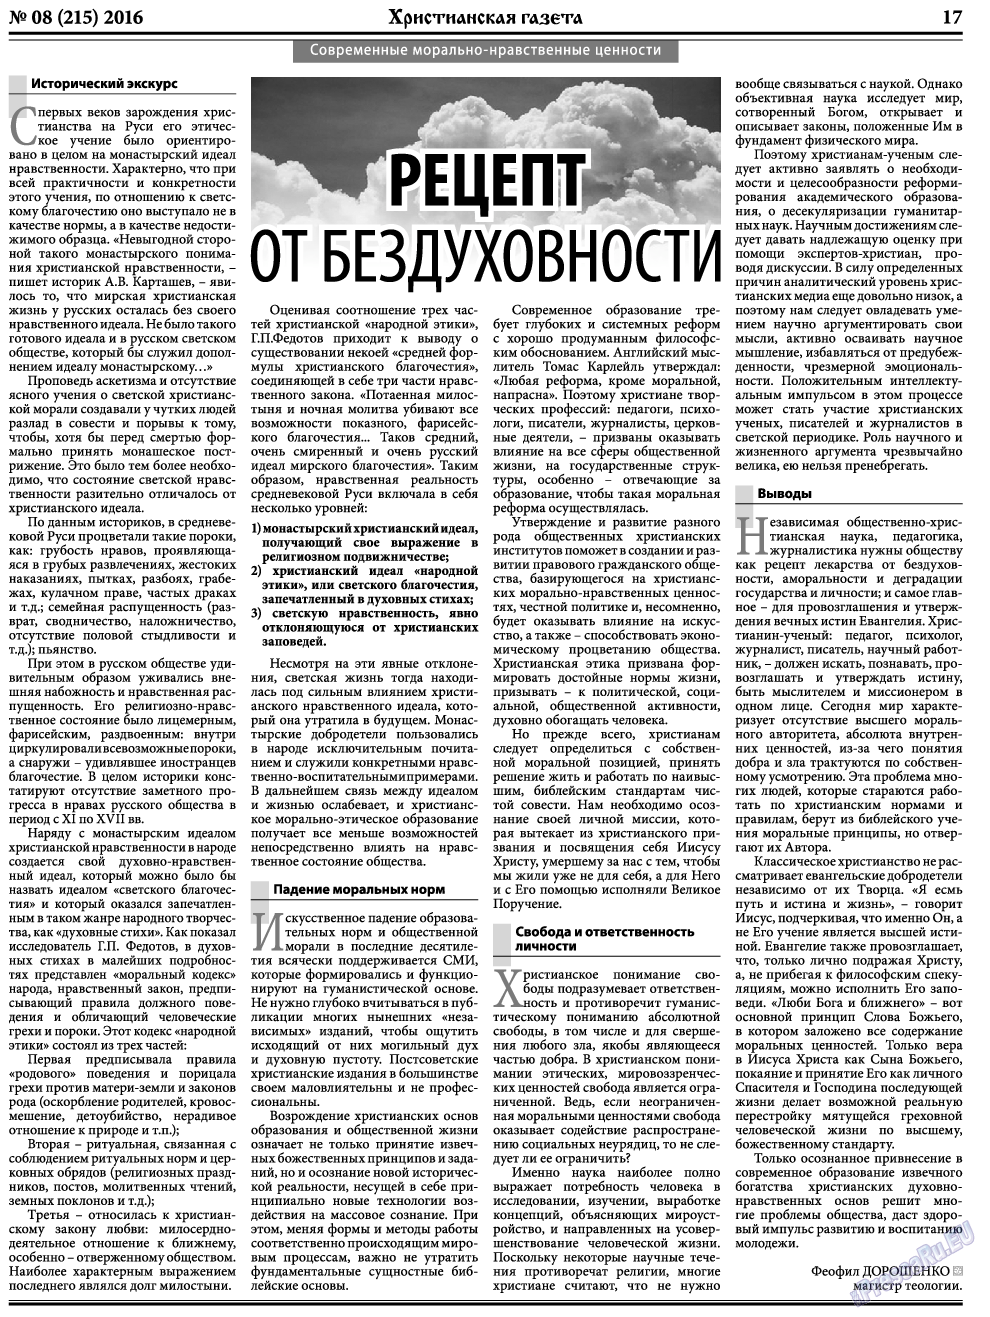 Христианская газета, газета. 2016 №8 стр.25